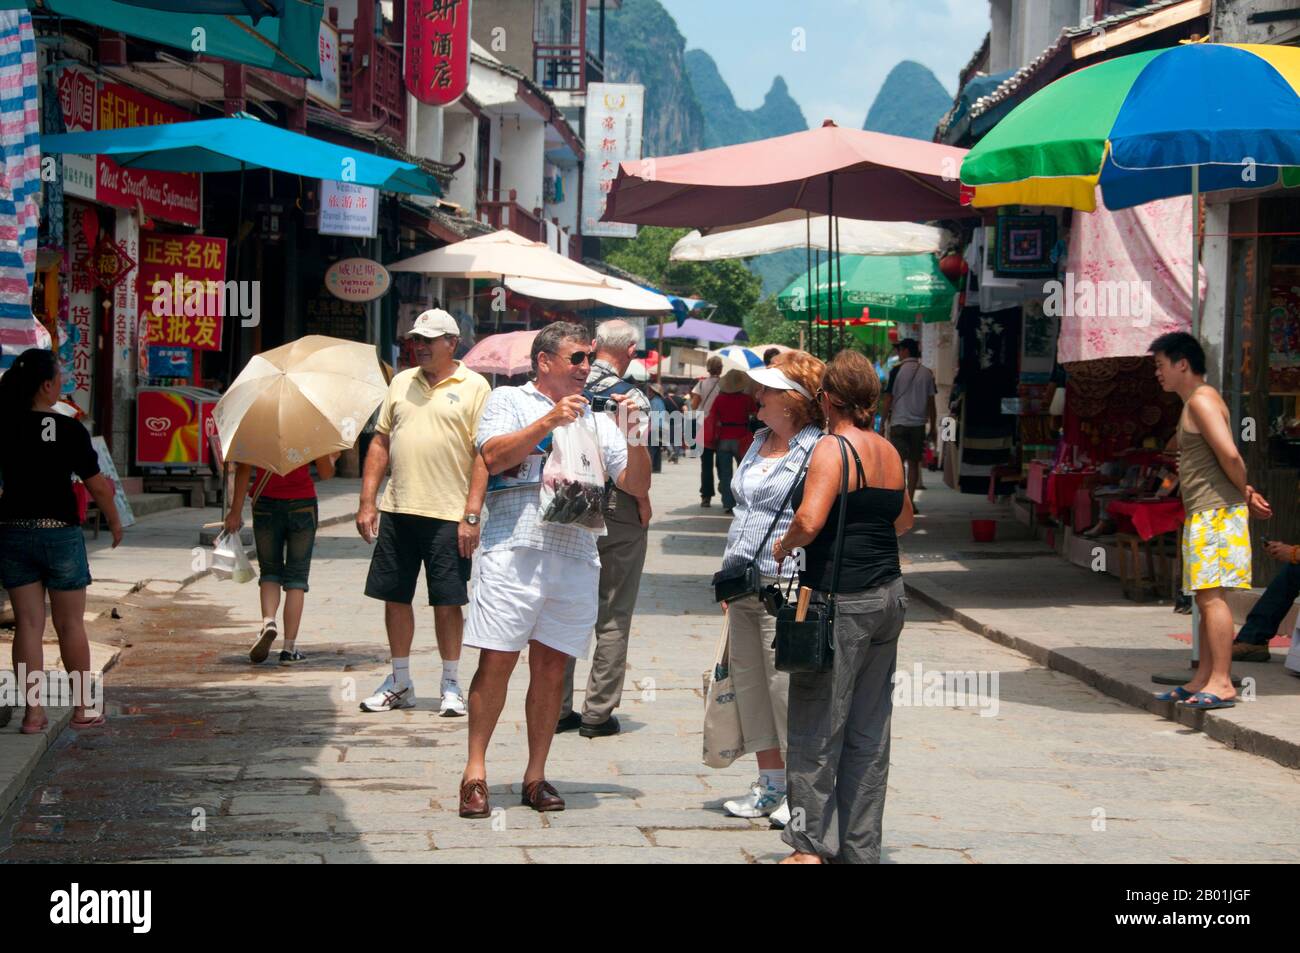 China: Touristen in Xi Jie („Foreigner Street“), Yangshuo, nahe Guilin, Provinz Guangxi. Yangshuo ist zu Recht berühmt für seine dramatische Landschaft. Es liegt am Westufer des Flusses Li (Lijiang) und ist nur 60 Kilometer stromabwärts von Guilin. In den letzten Jahren ist es zu einem beliebten Reiseziel bei Touristen geworden und hat gleichzeitig das Gefühl einer kleinen Flussstadt bewahrt. Guilin ist der Schauplatz von Chinas berühmtesten Landschaften und inspiriert Tausende von Gemälden über viele Jahrhunderte. Sie wurden oft als die „schönsten Berge und Flüsse unter dem Himmel“ bezeichnet. Stockfoto